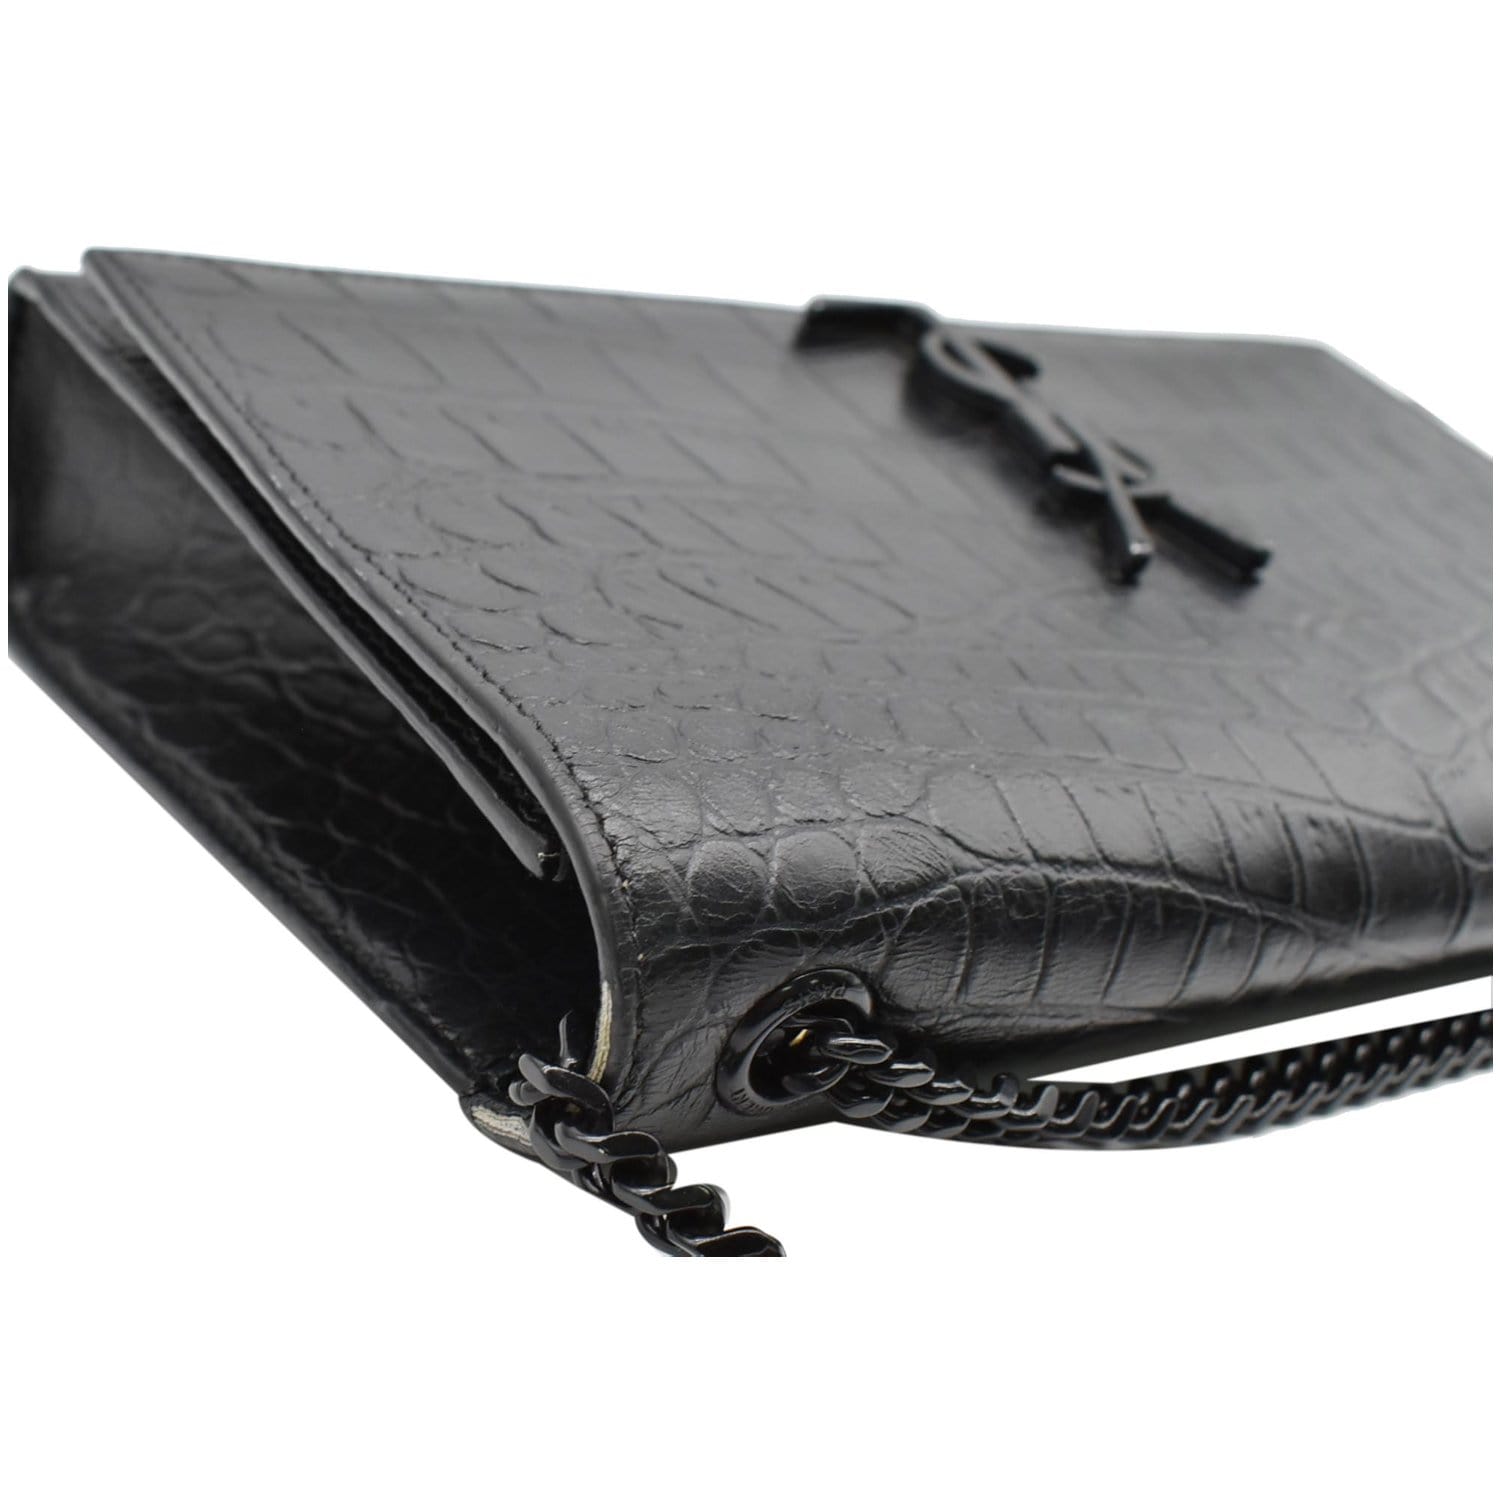 AMARA Bag Crocodile Black/Black Structured Shoulder Bag